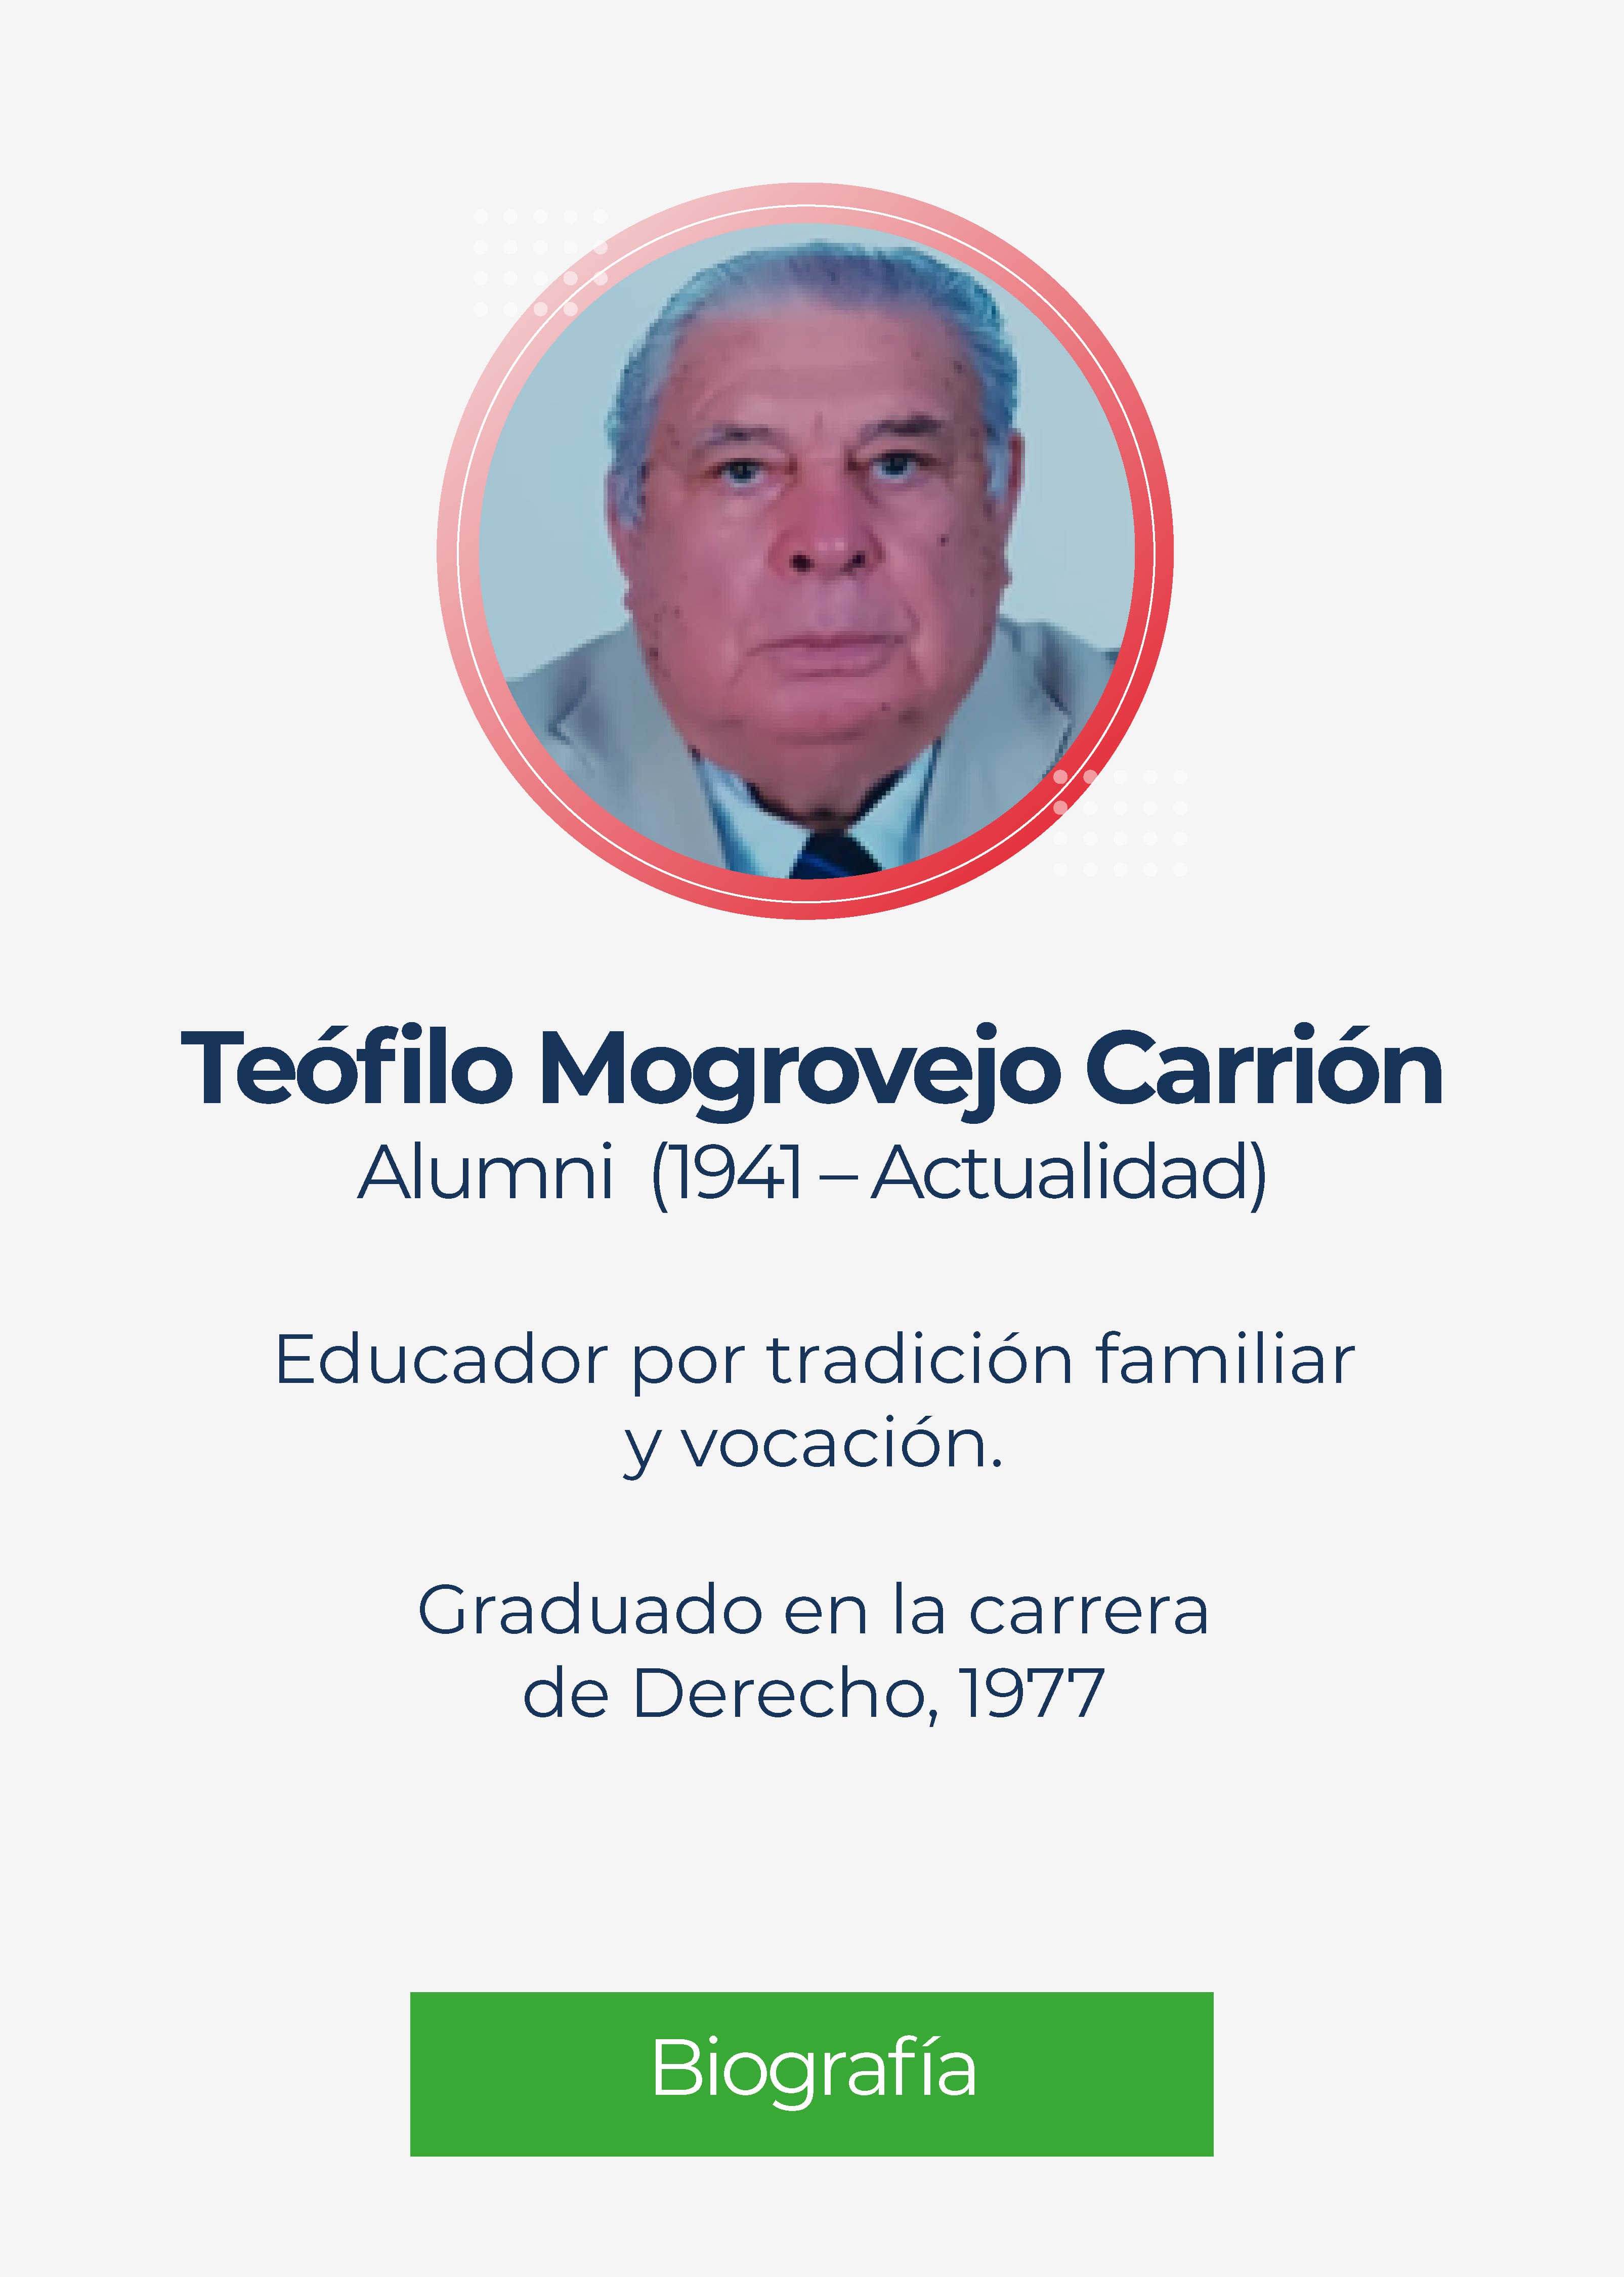 Teófilo Miguel Mogrovejo Carrión